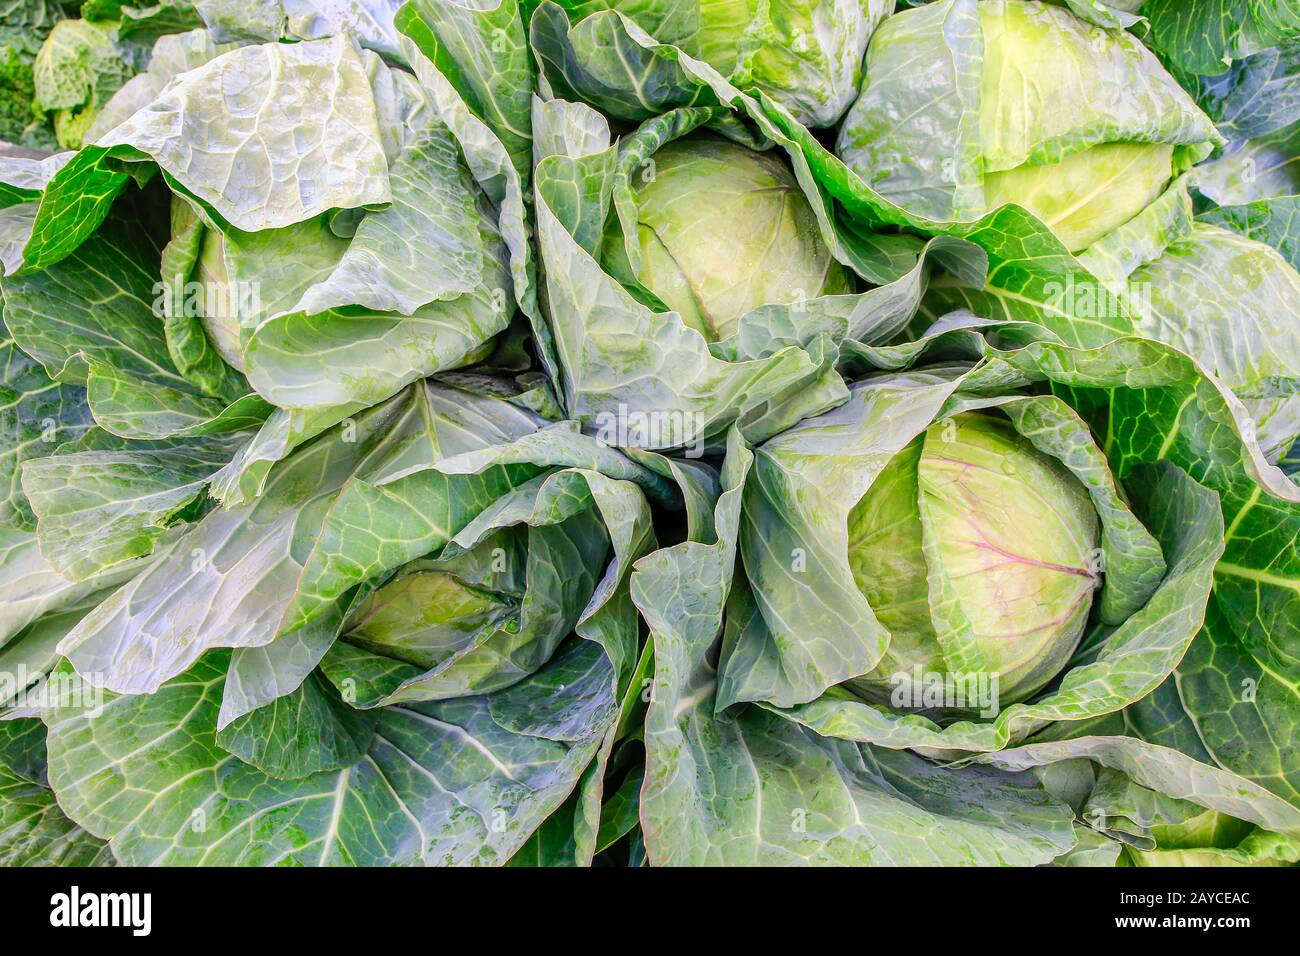 Plantes de chou vert comme légumes sur le marché Banque D'Images